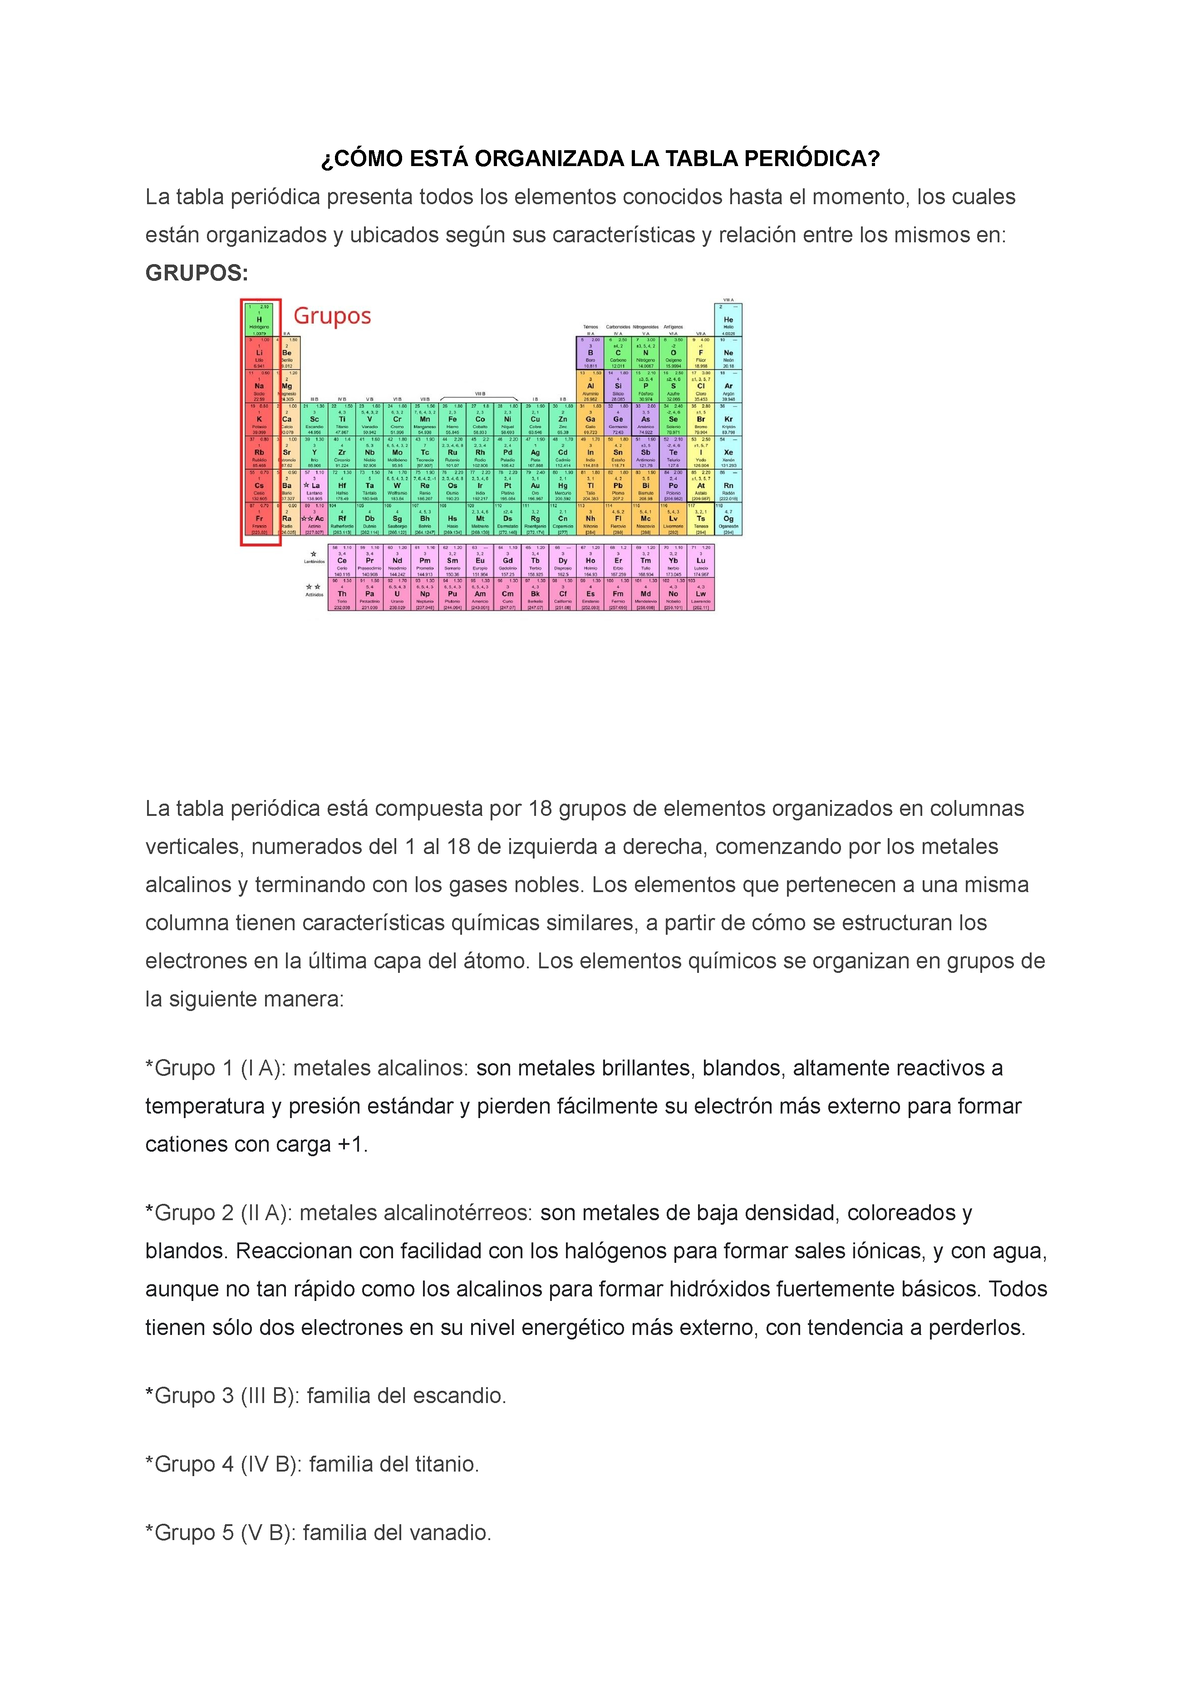 Tabla Periódica: qué es y cómo está organizada (grupos de elementos,  periodos) - Enciclopedia Significados